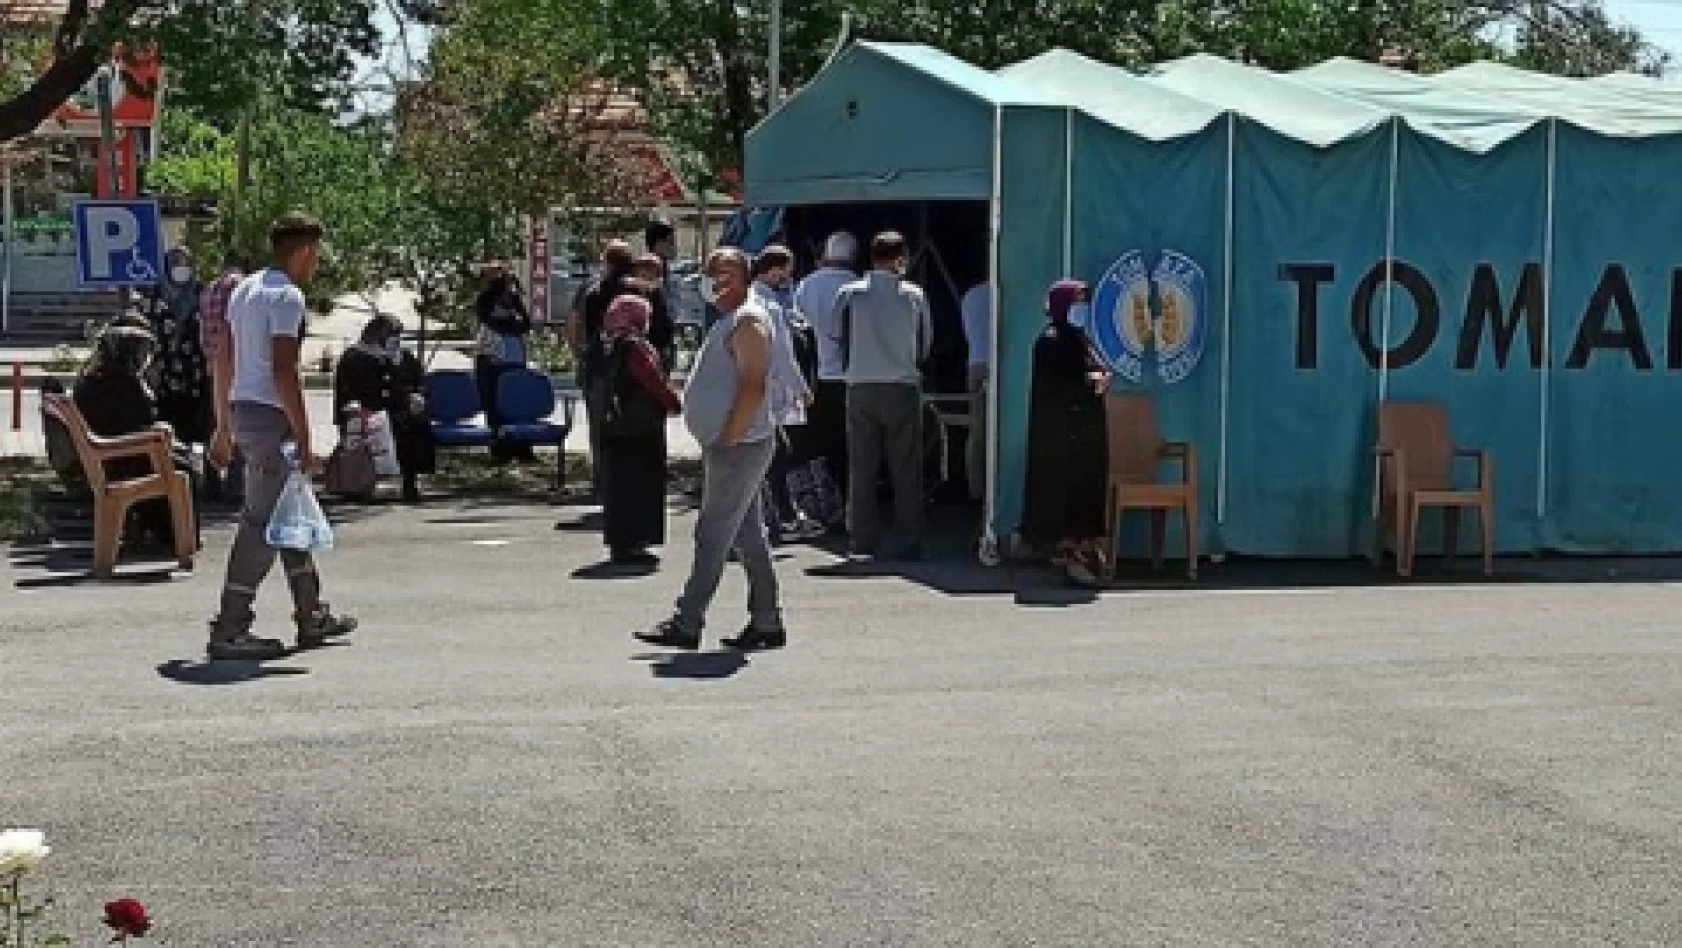 Tomarza Devlet Hastanesine aşı çadırı kuruldu